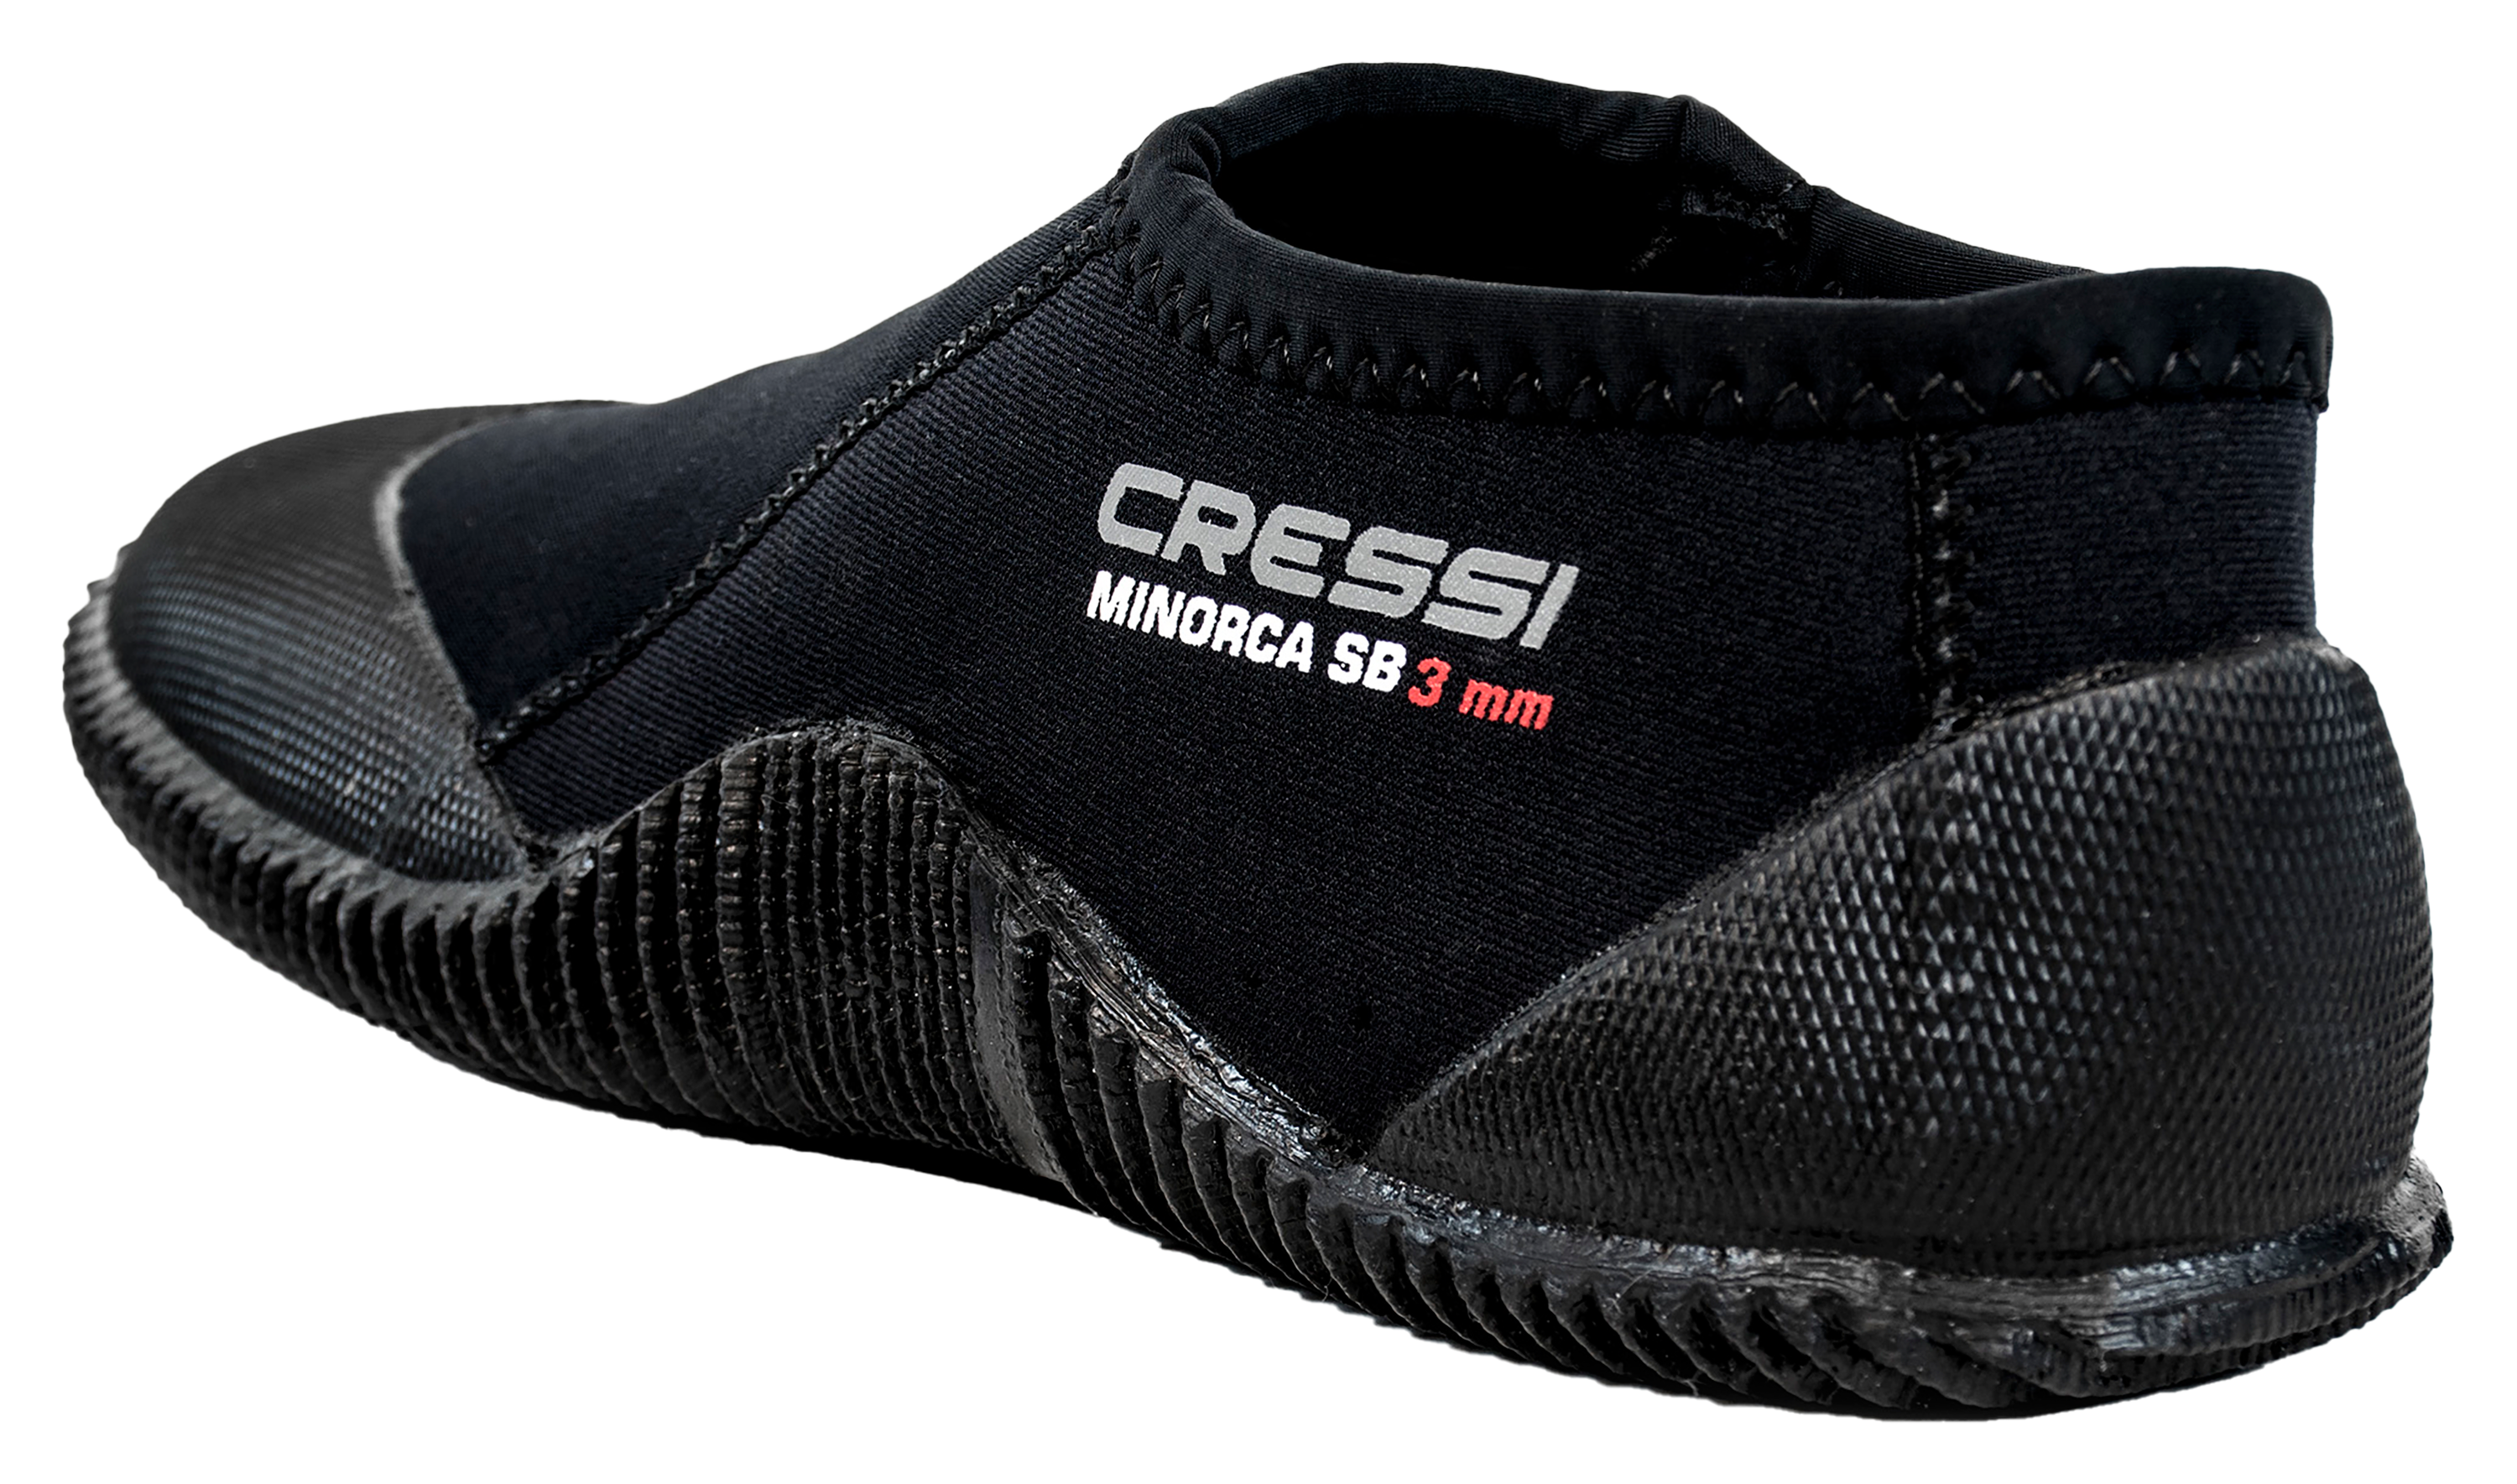 Cressi Minorca Short Boots for Men - Black - 5